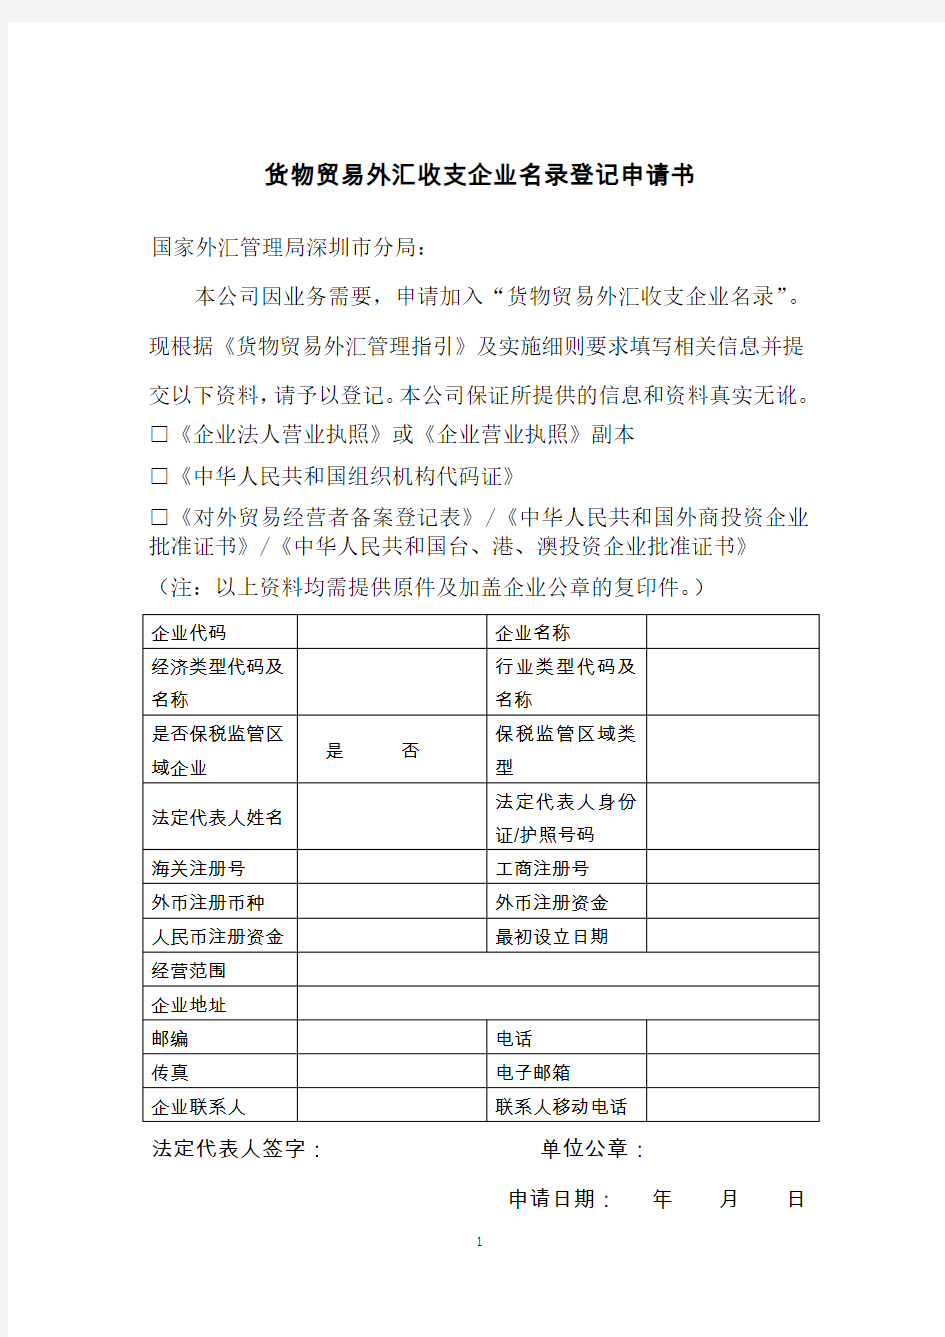 深圳市货物贸易外汇收支企业名录登记申请书